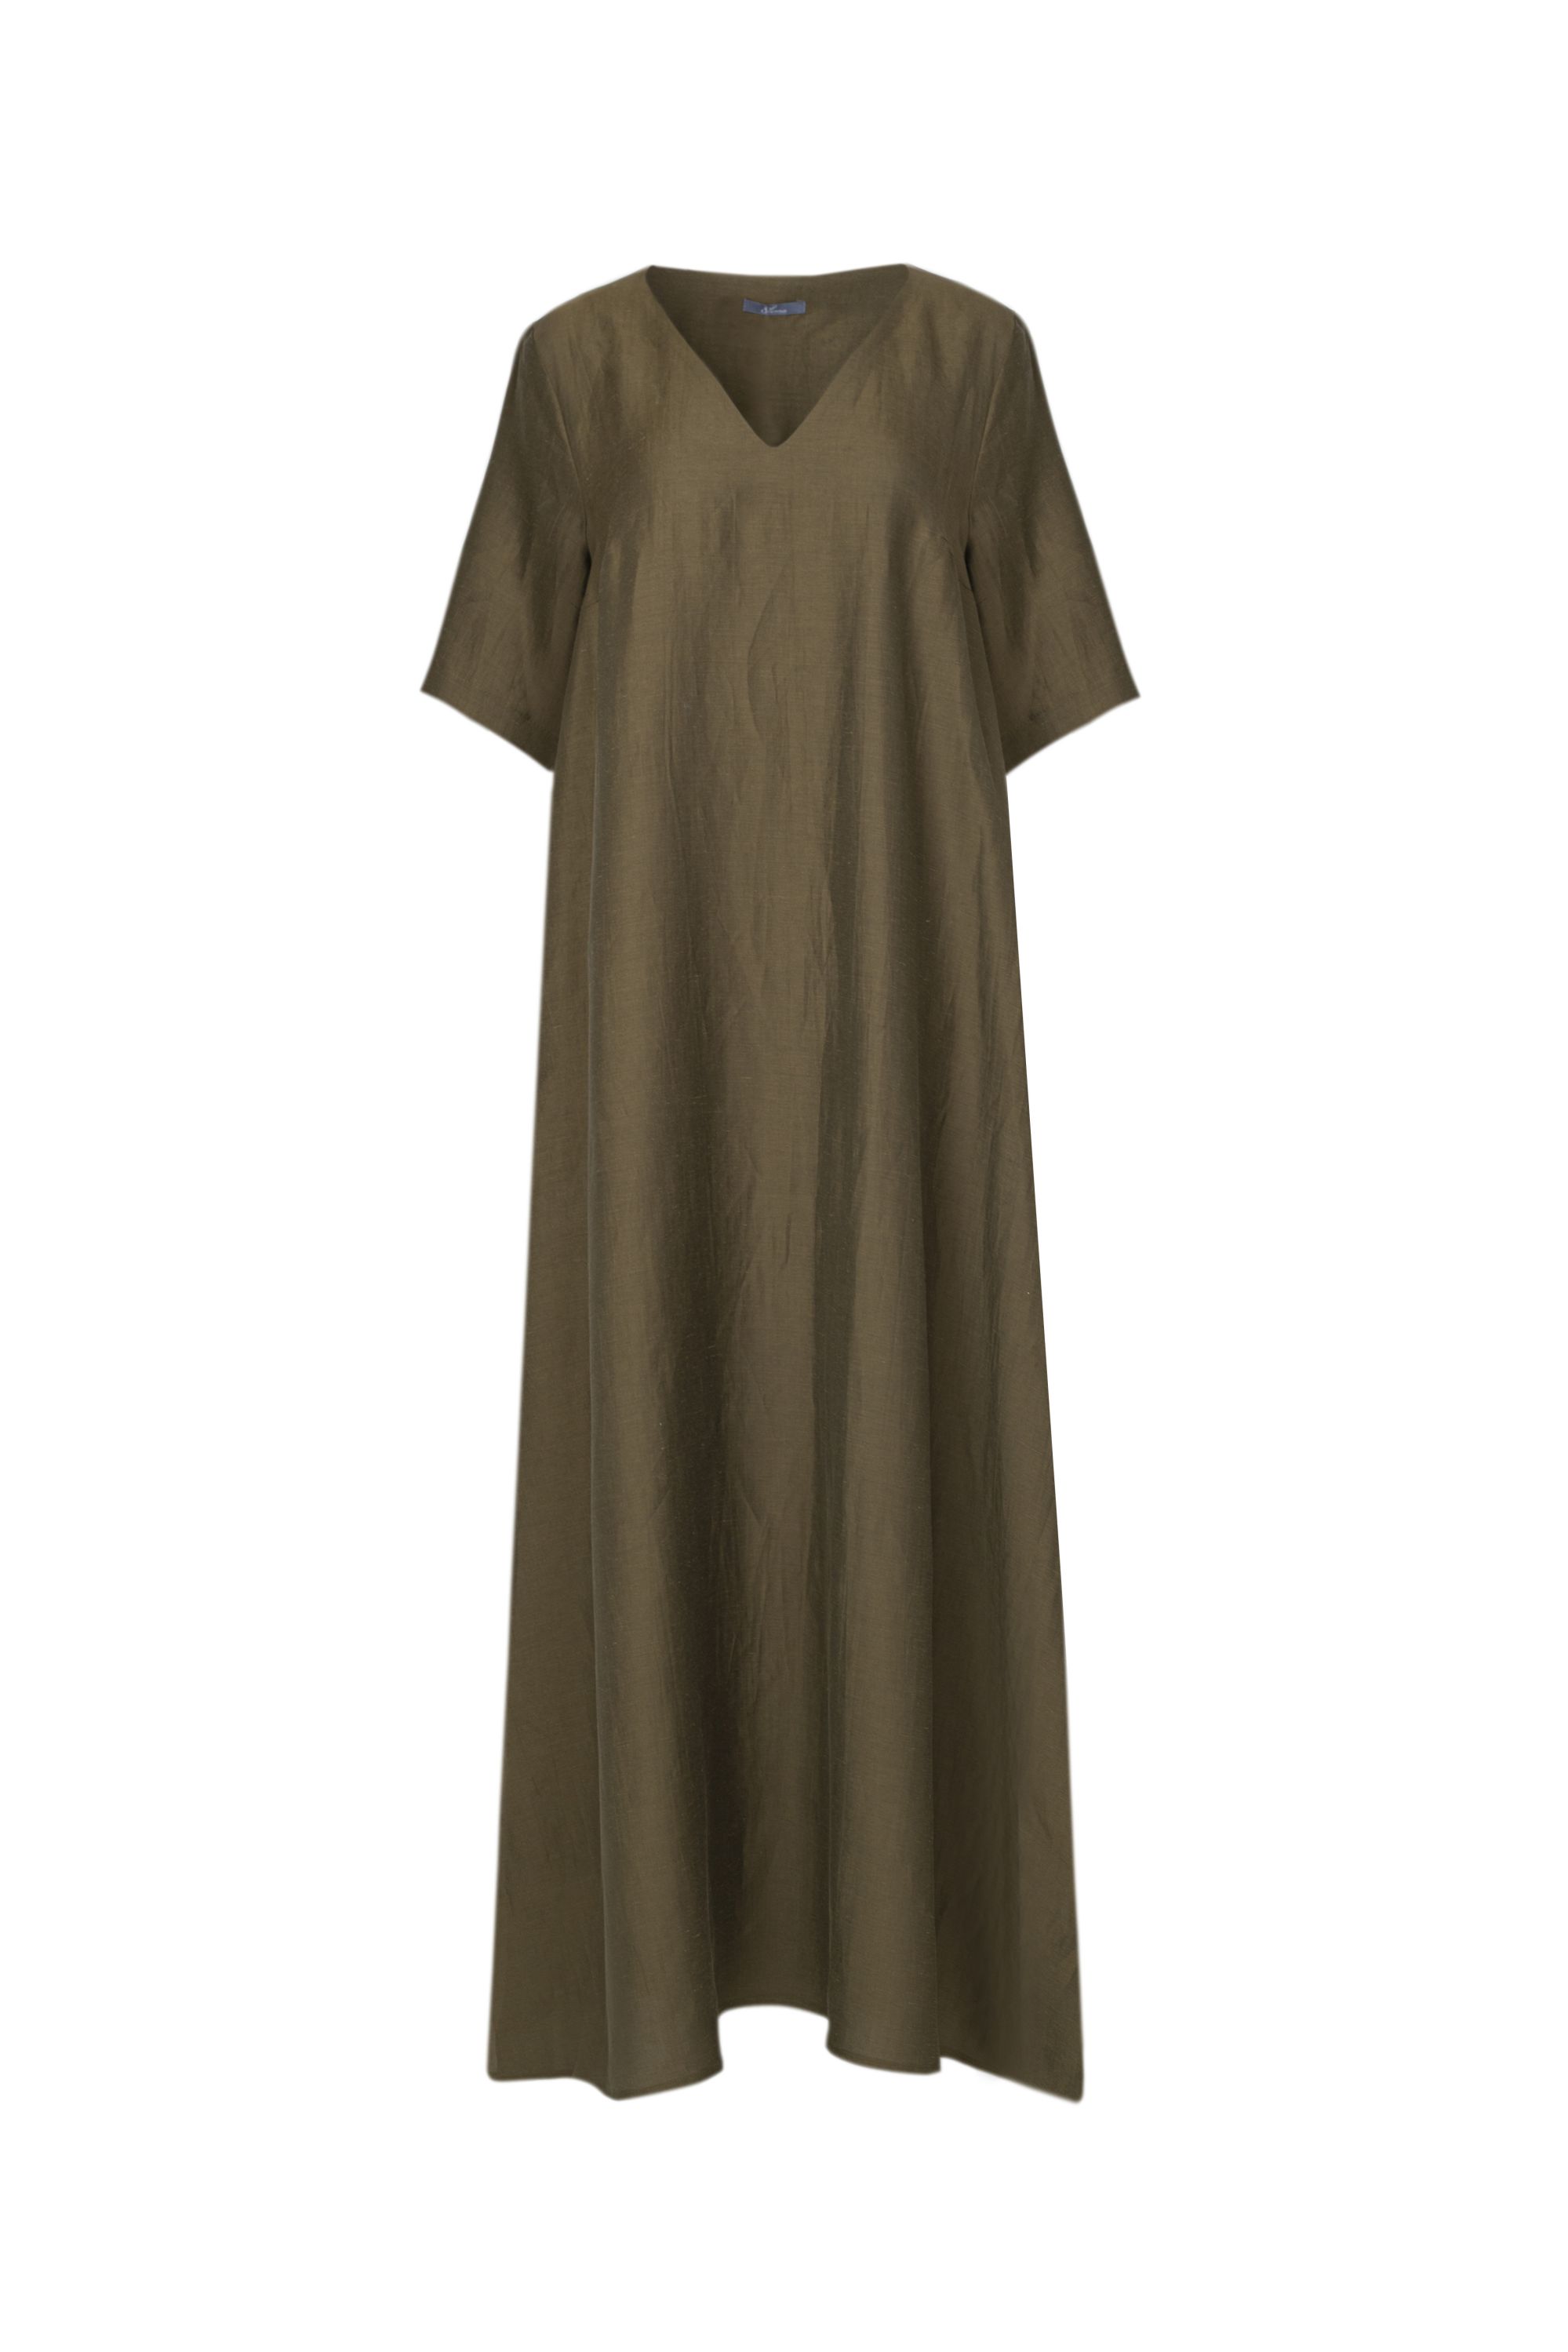 Платье женское 5К-13086-1. Фото 1.